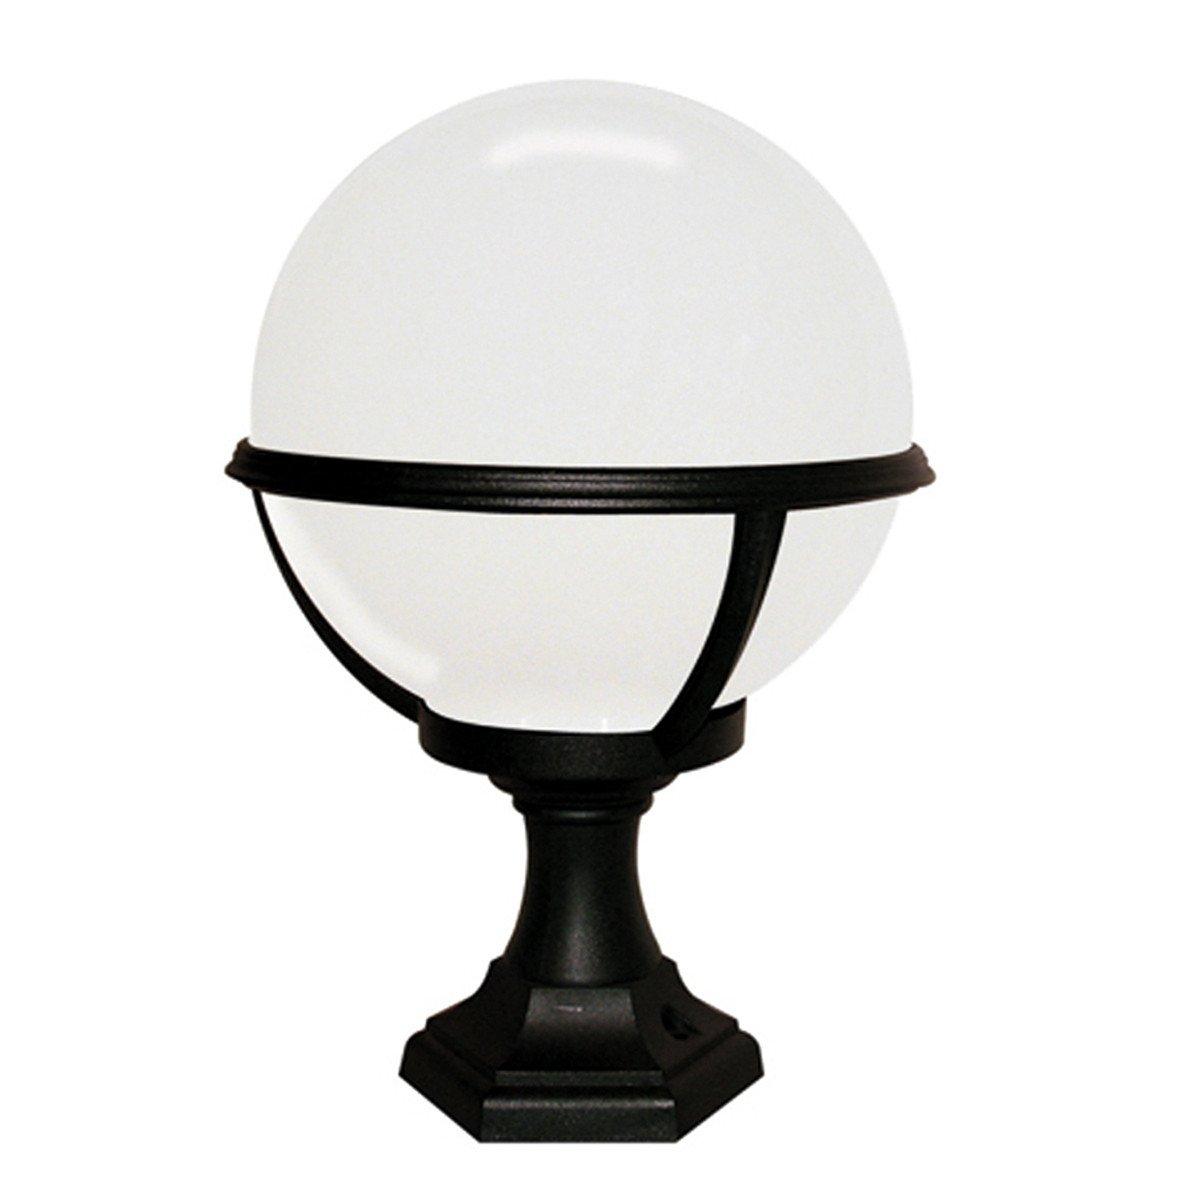 Glenbeigh 1 Light Outdoor Pedestal Lantern Black IP44 E27